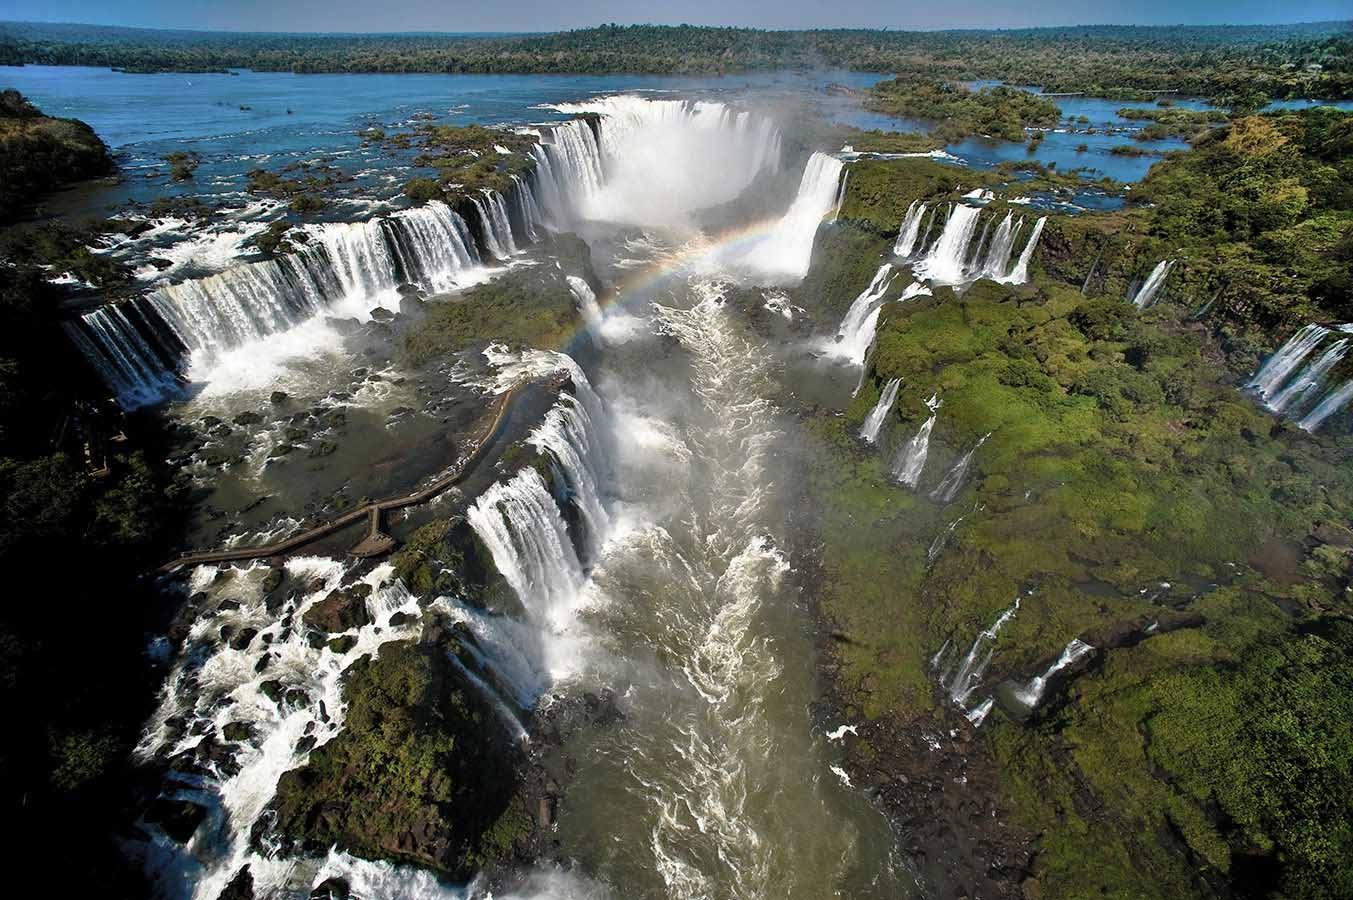  Ingresso para as Cataratas do Iguaçu tem reajuste a partir desta sexta